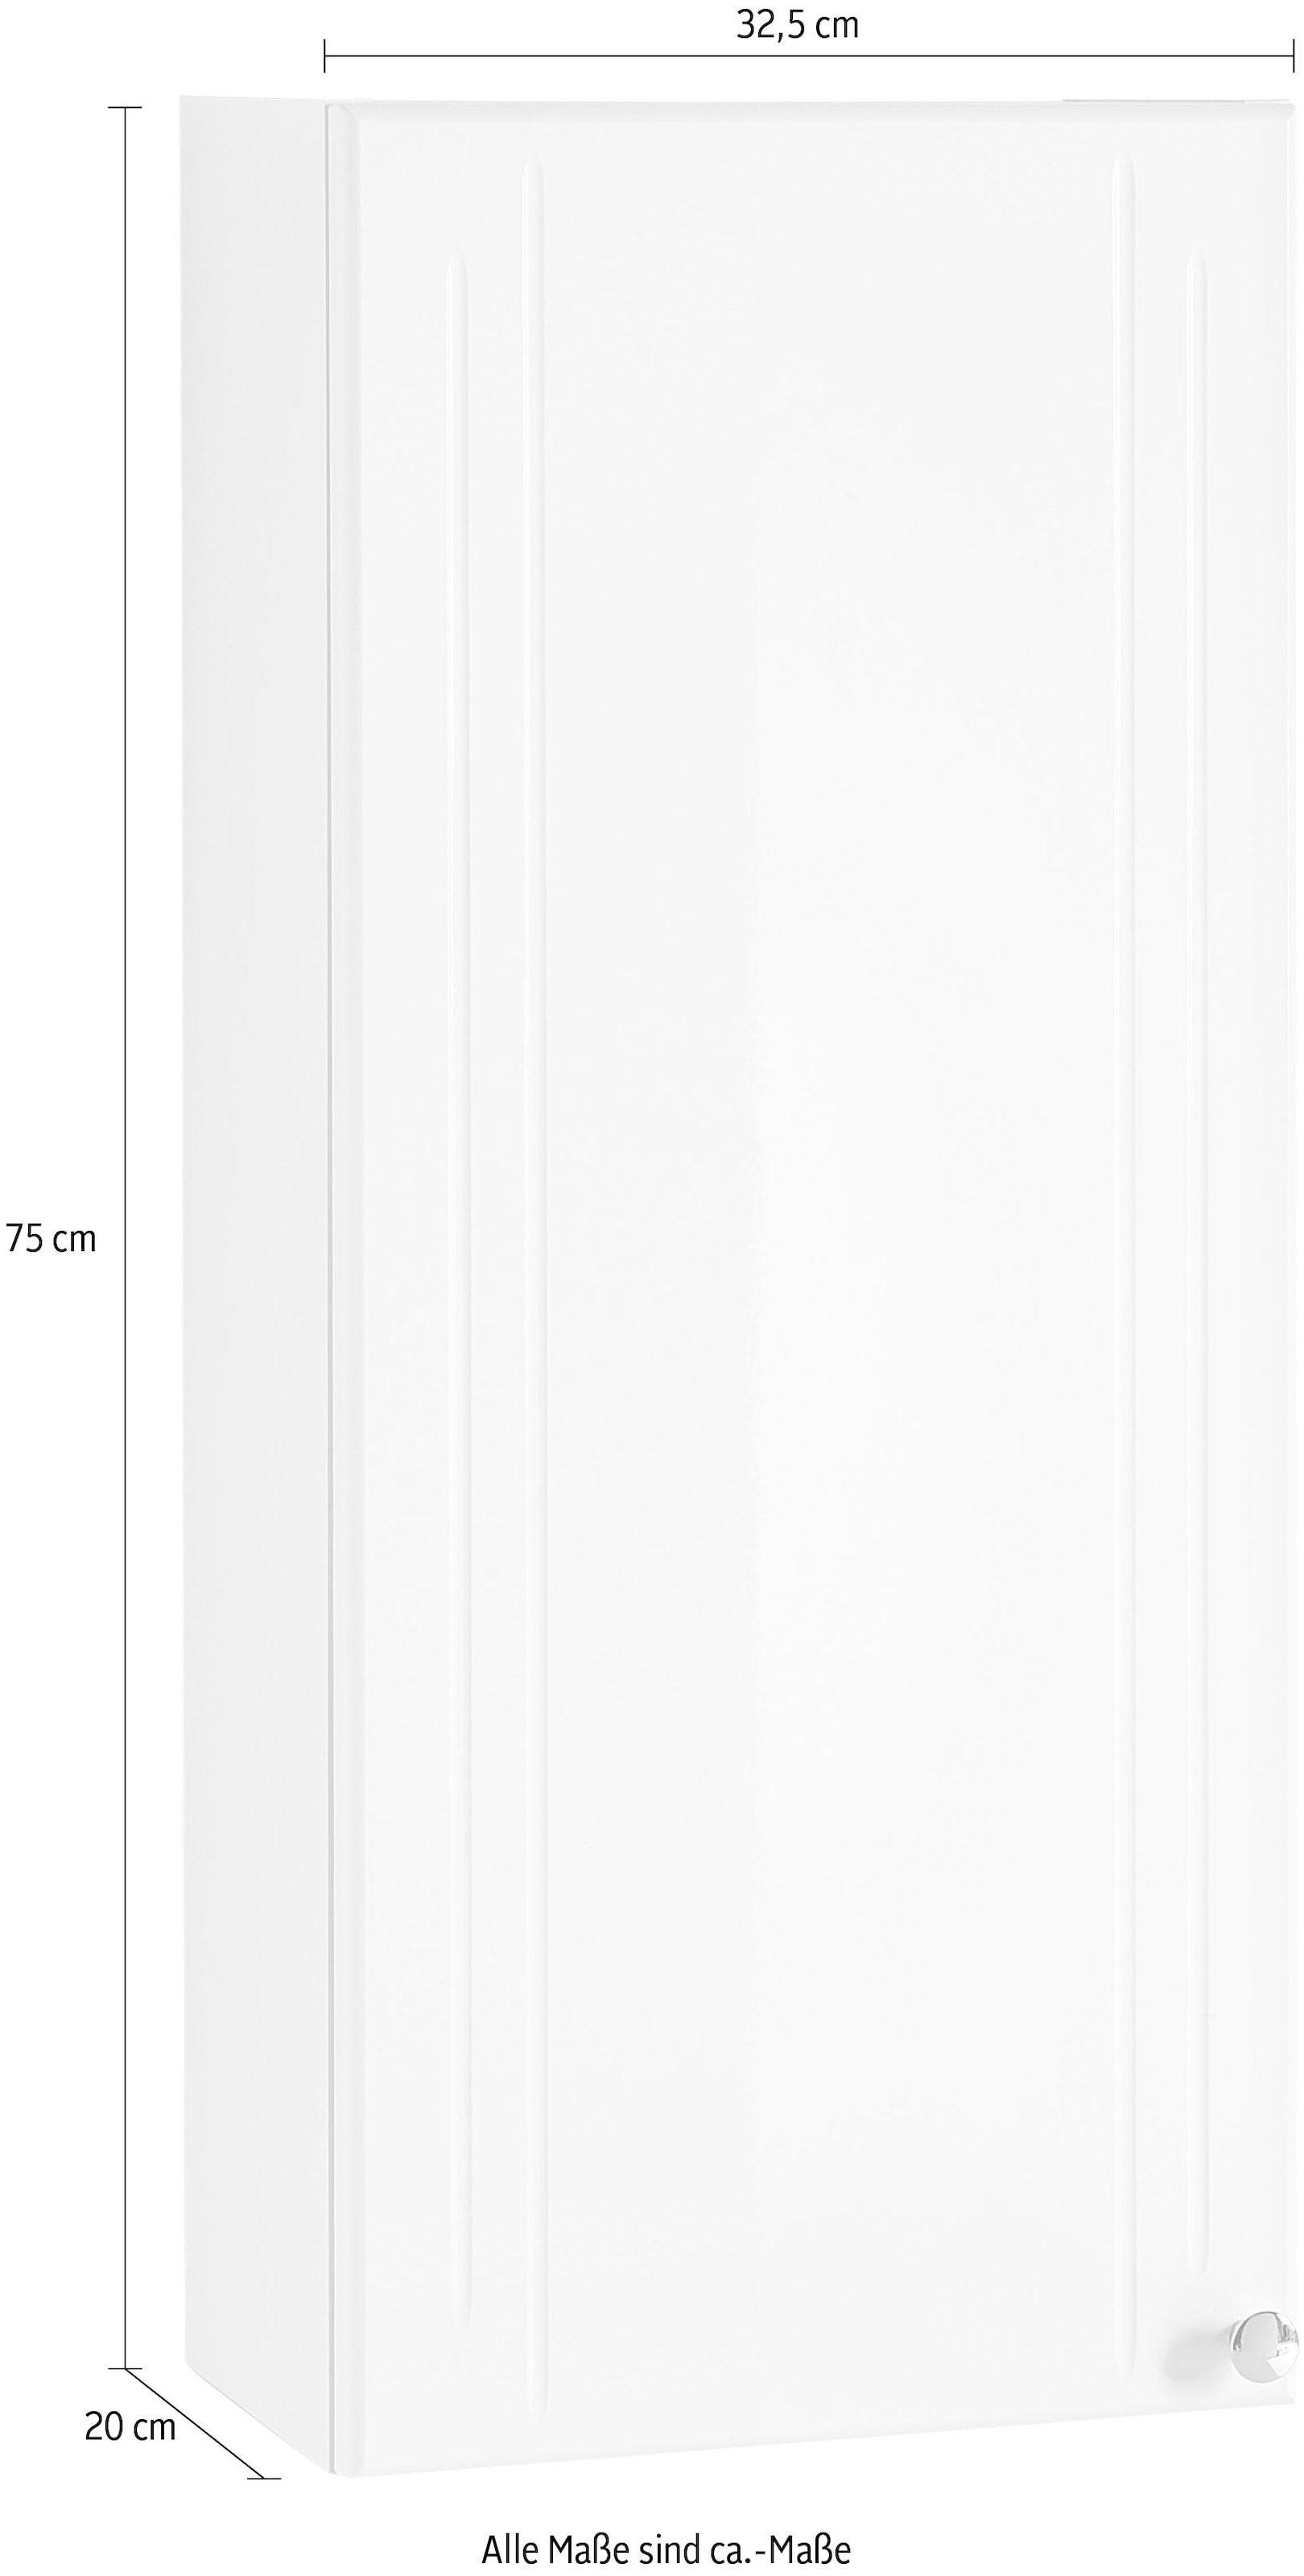 Saphir Hängeschrank »Quickset 955 Wand-Badschrank 32,5 cm breit mit 1 Tür, 2 Einlegeböden«, Badezimmer-Hängeschrank, Weiß Hochglanz, Griffe in Chrom Glanz